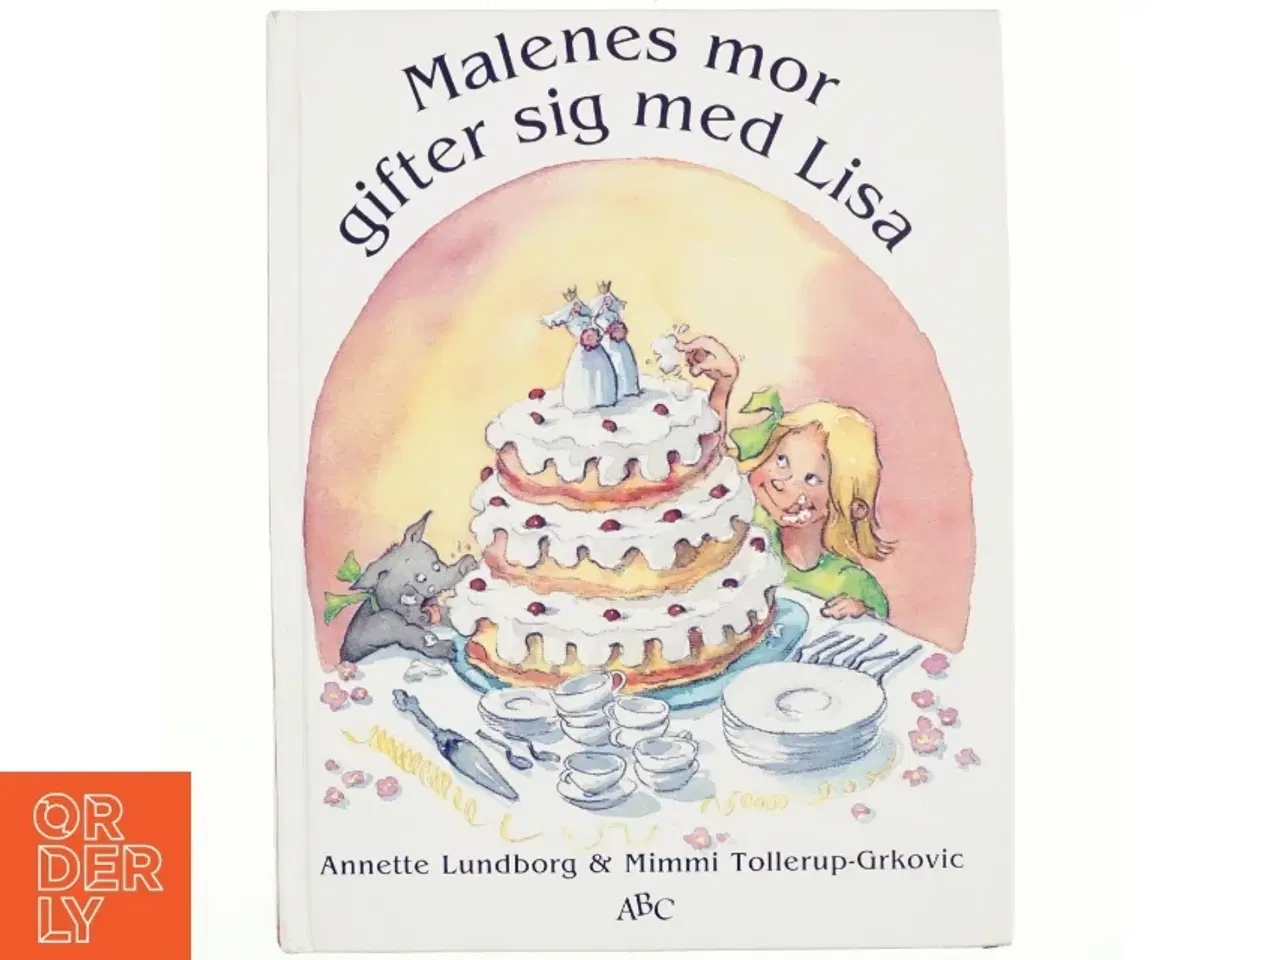 Billede 1 - Malenes mor gifter sig med Lisa af Annette Lundborg, Mimmi Tollerup-Grkovic (Bog)